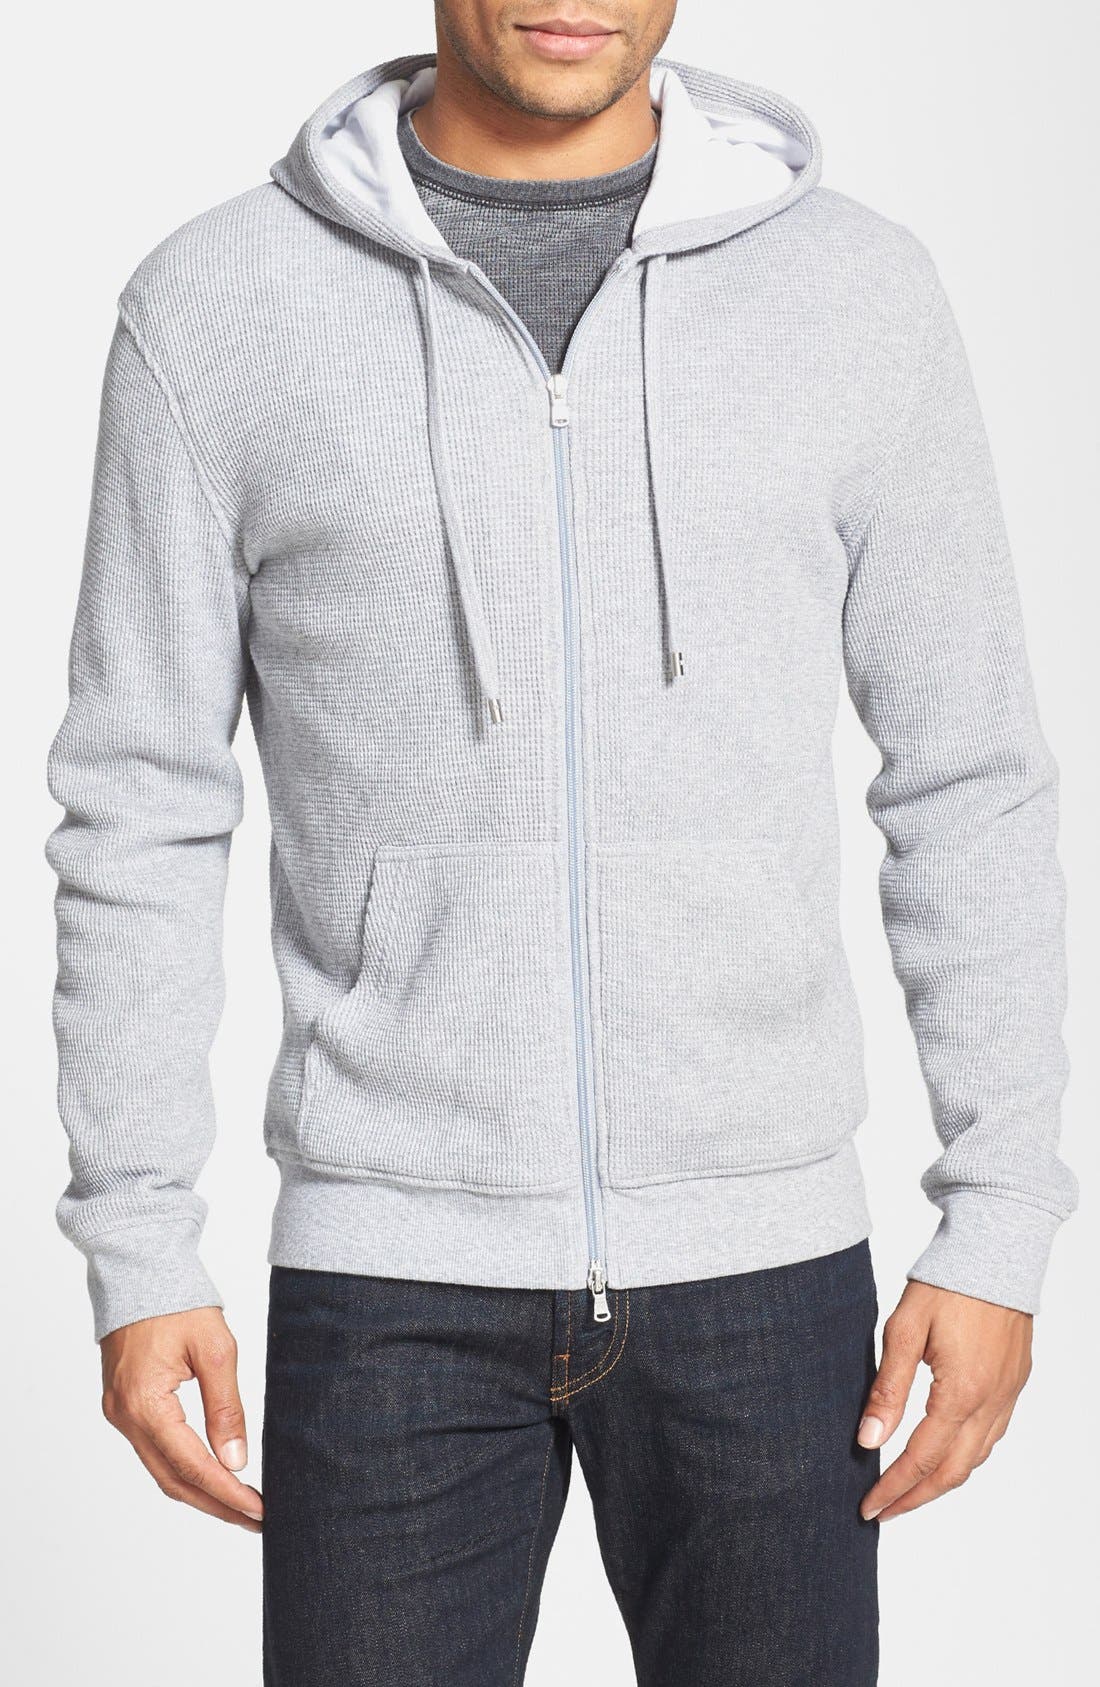 michael kors hoodie mens grey